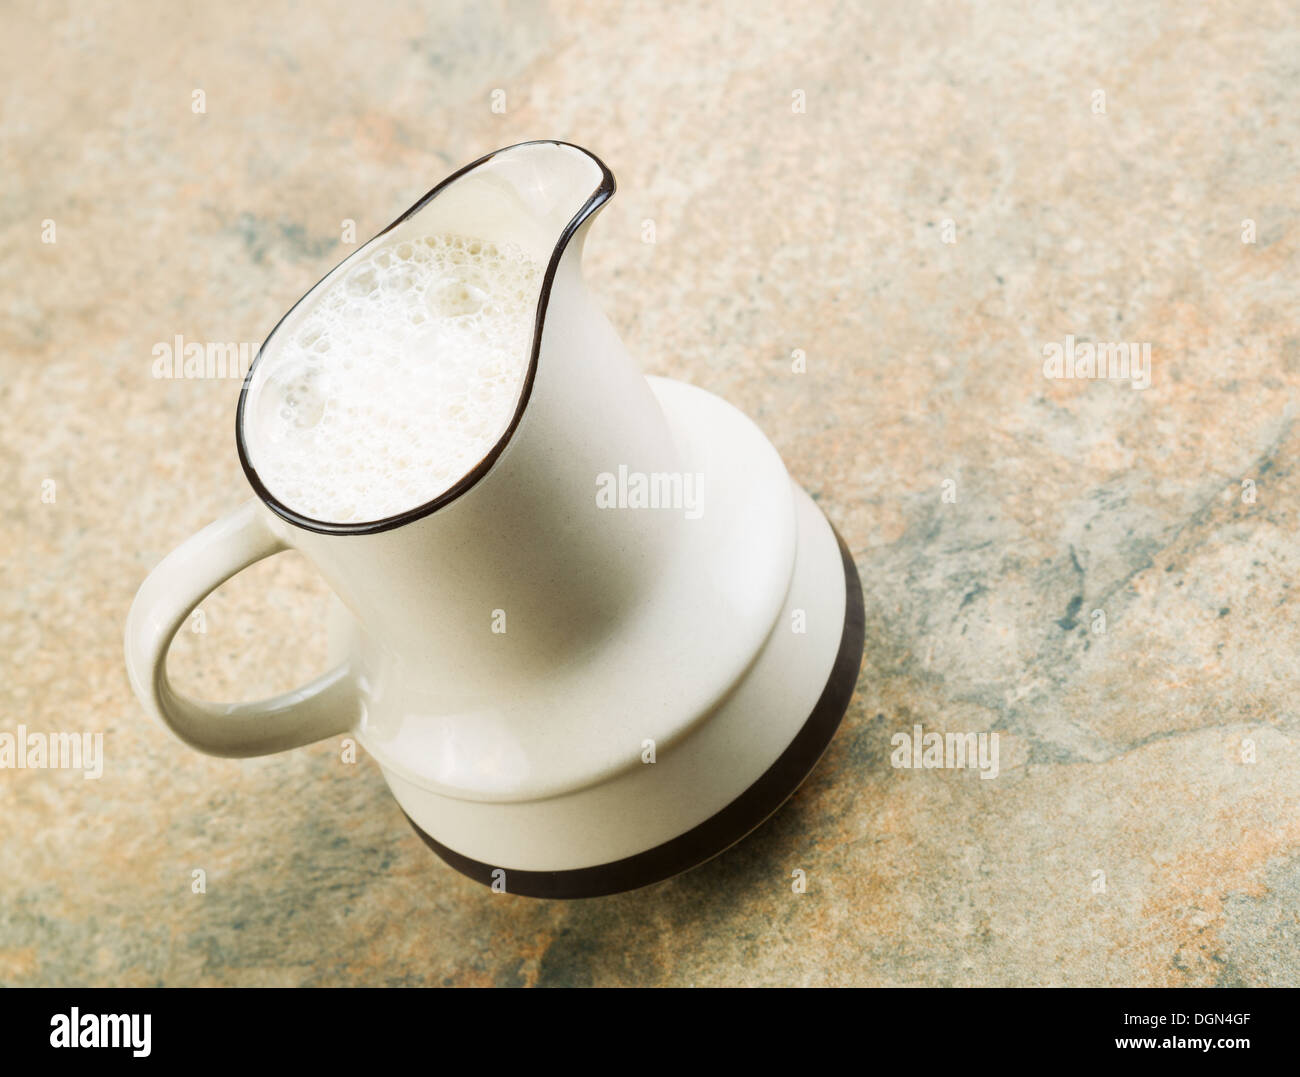 L'angle de photo cruche remplie de lait d'amande assis sur un comptoir en pierre Banque D'Images